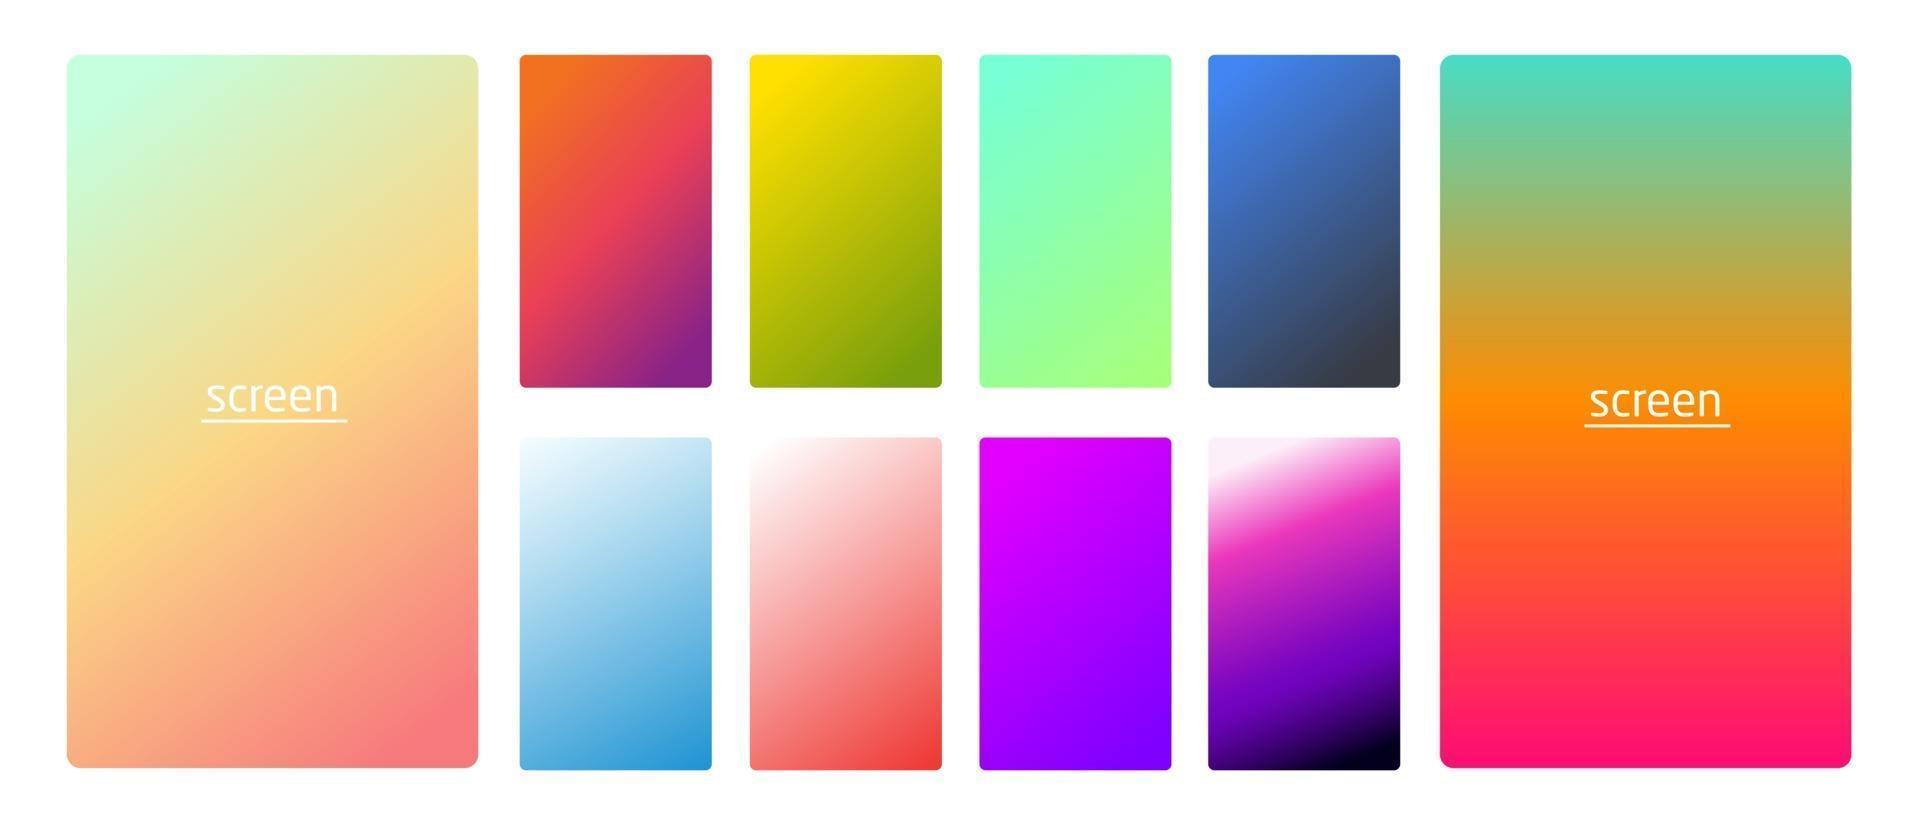 fundo de cor suave gradiente pastel vibrante e suave definido para dispositivos pc e tela do smartphone moderno fundos de cor pastel suave vetorial vetor